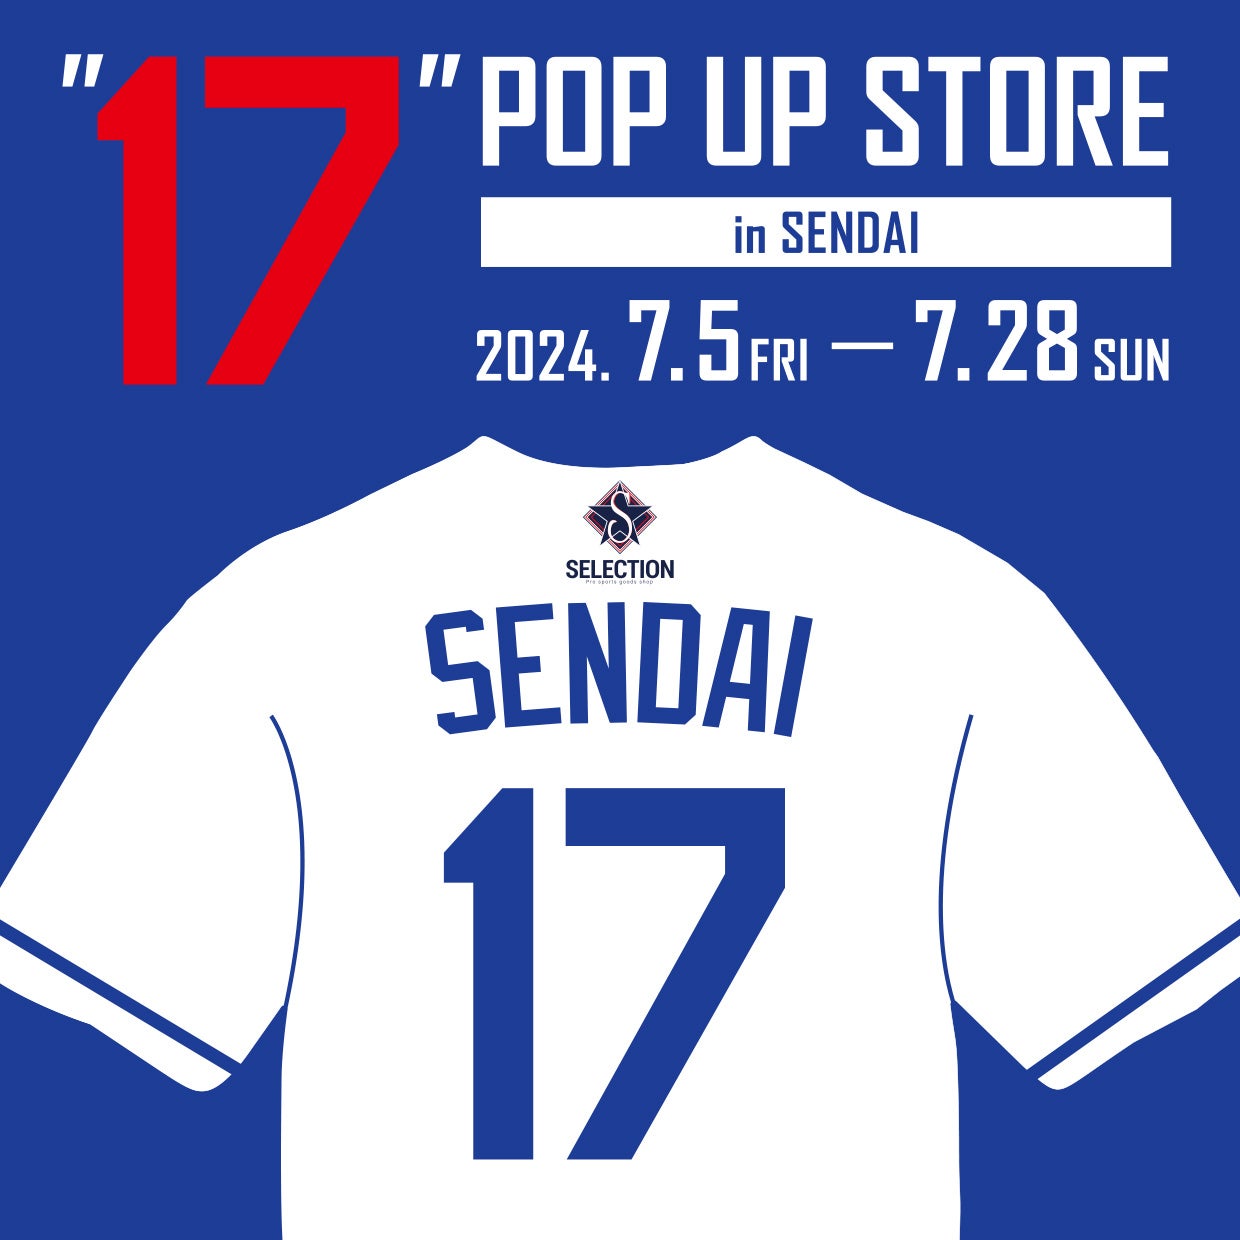 ここでしか見られない大谷選手の特別展示が登場！『”17” POP UP STORE in SENDAI』